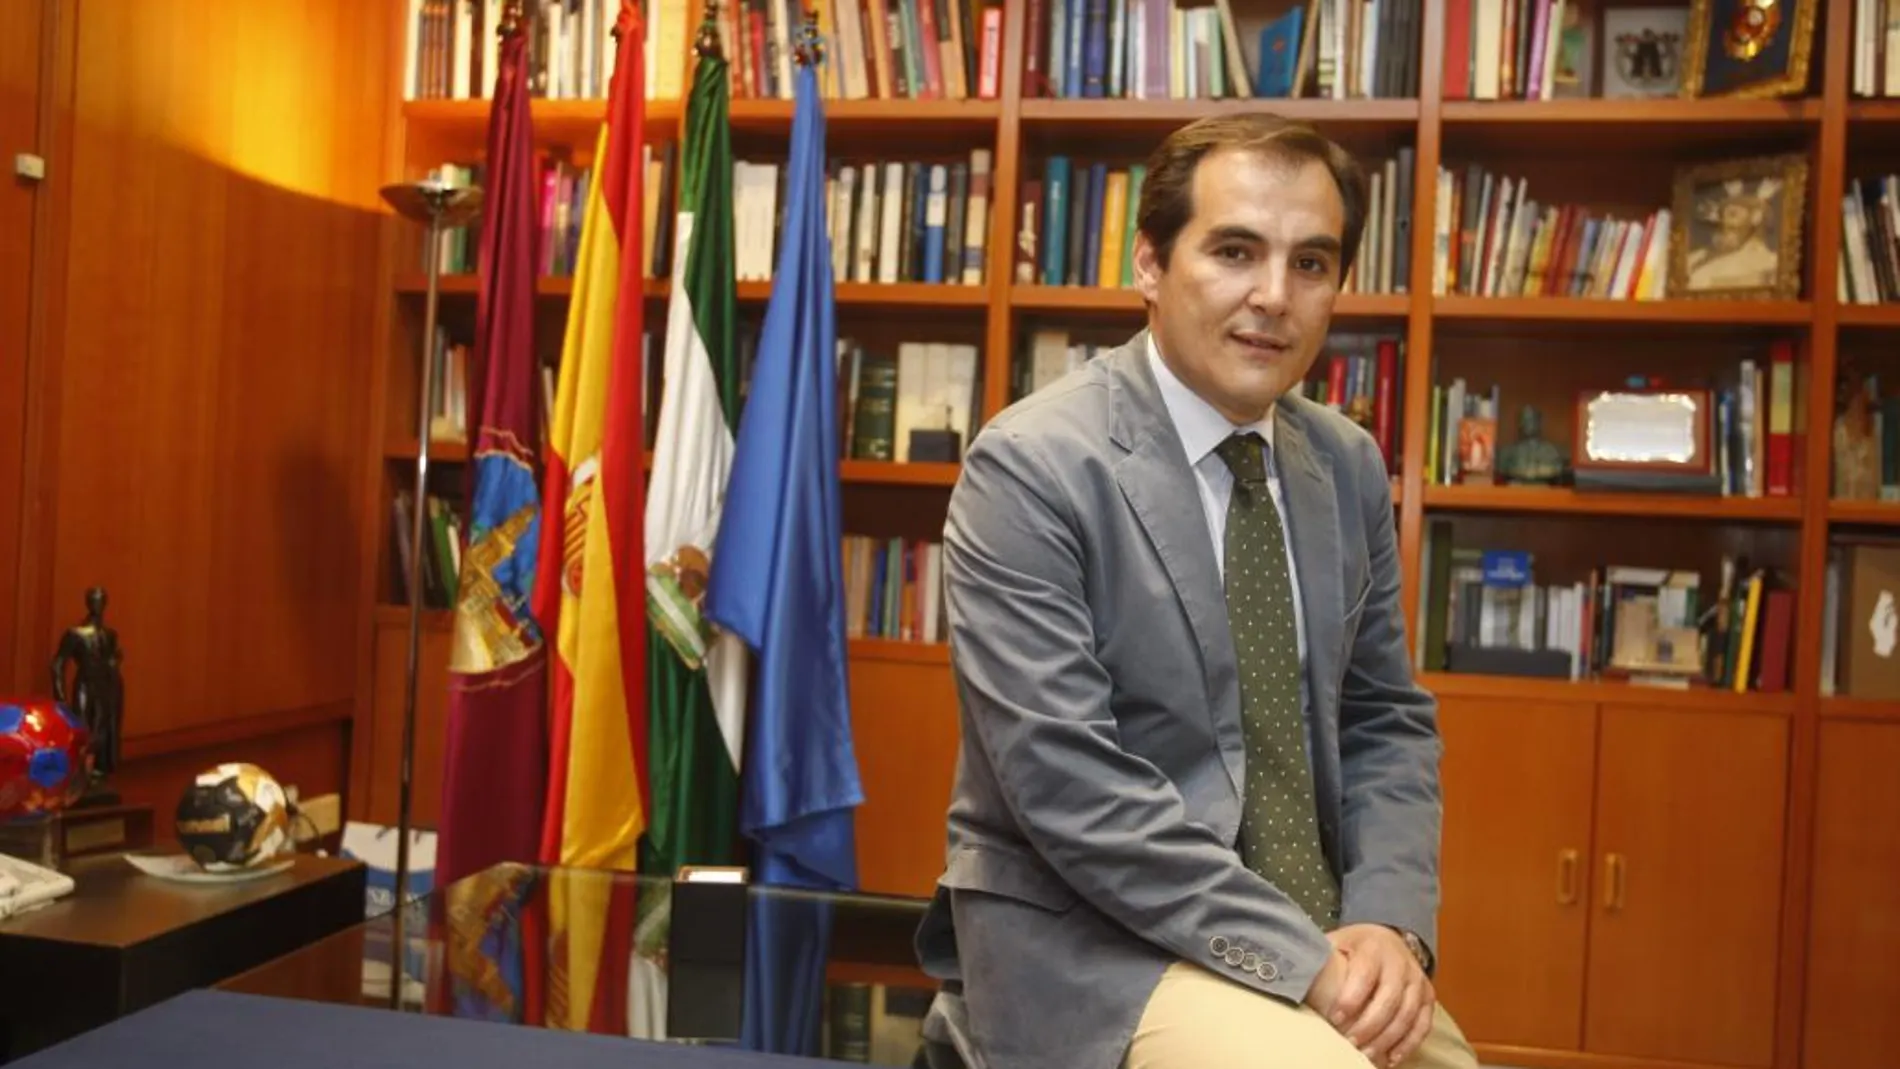 Imagen de José Antonio Nieto, ex alcalde de Córdoba, nombrado secretario de Estado de Seguridad.